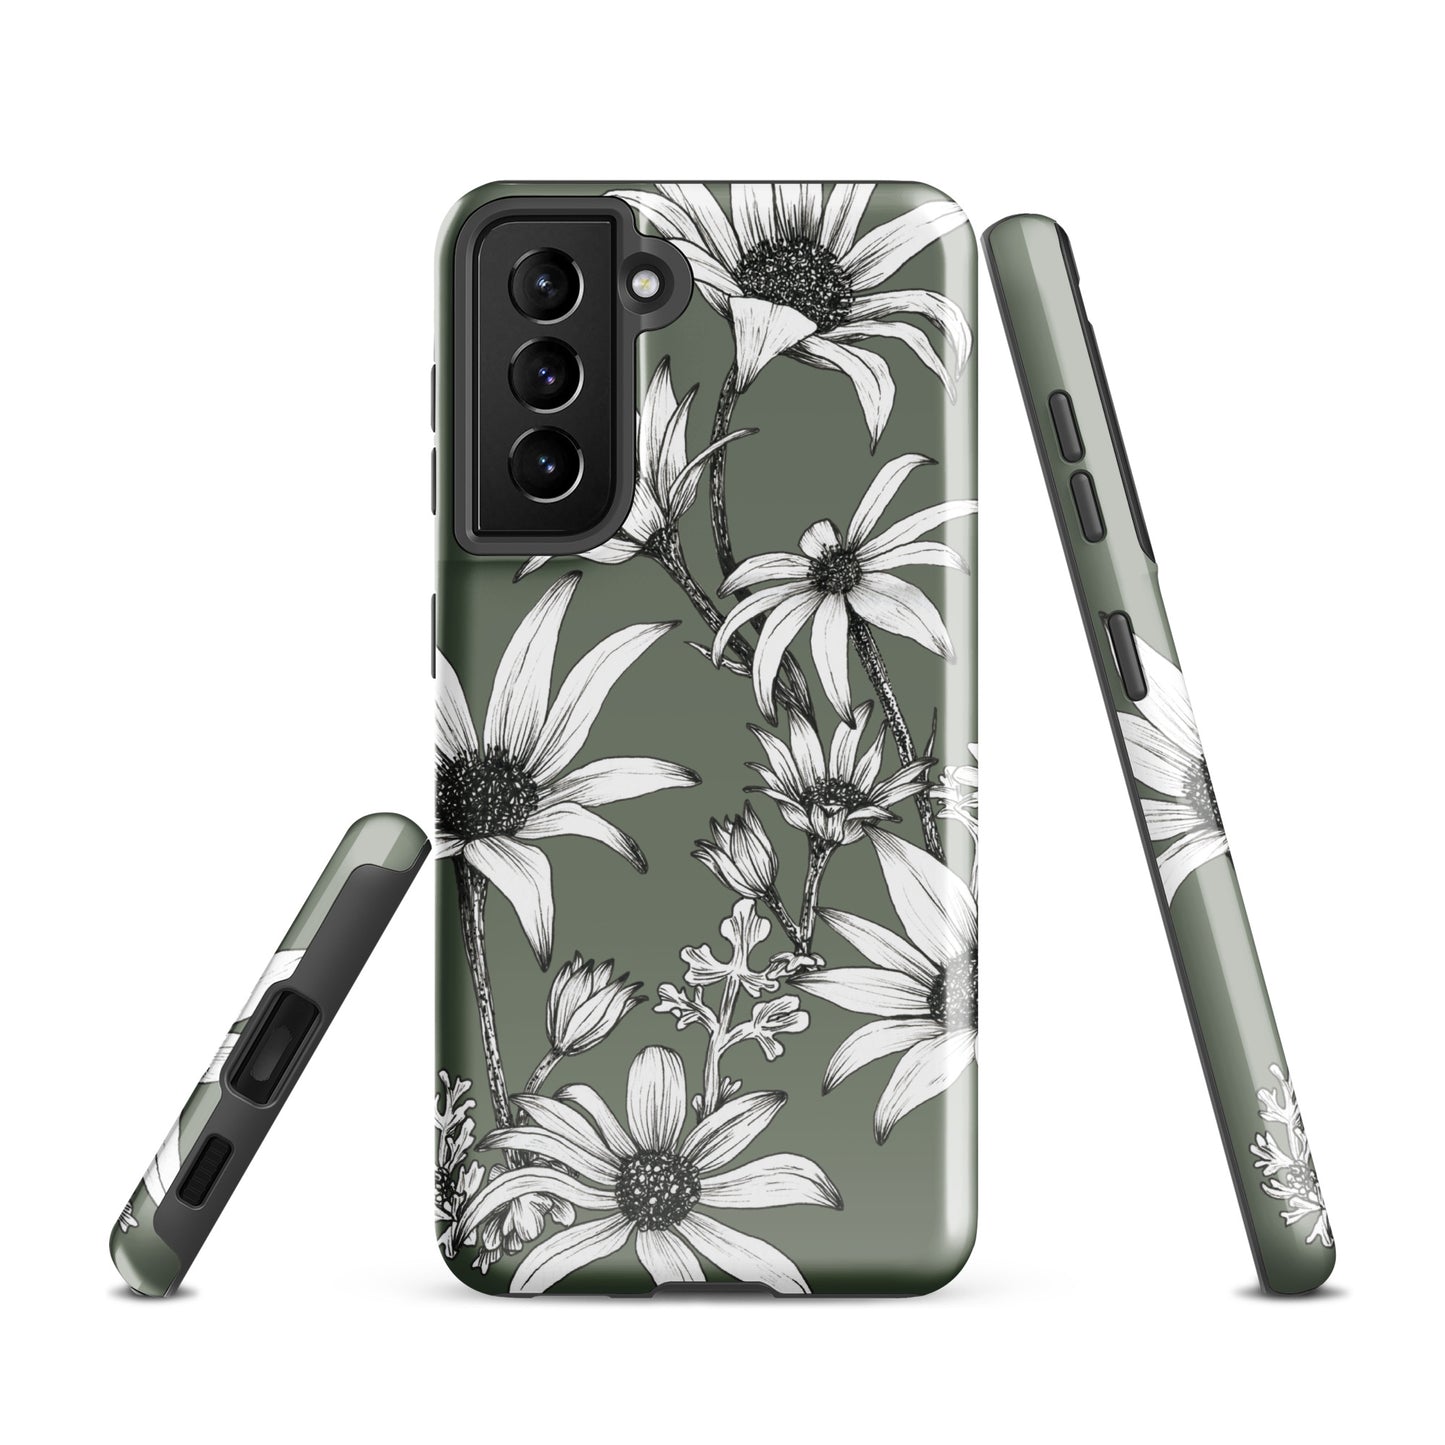 Tough case for Samsung® S10 - S24 Flannel Flower Dark Sage